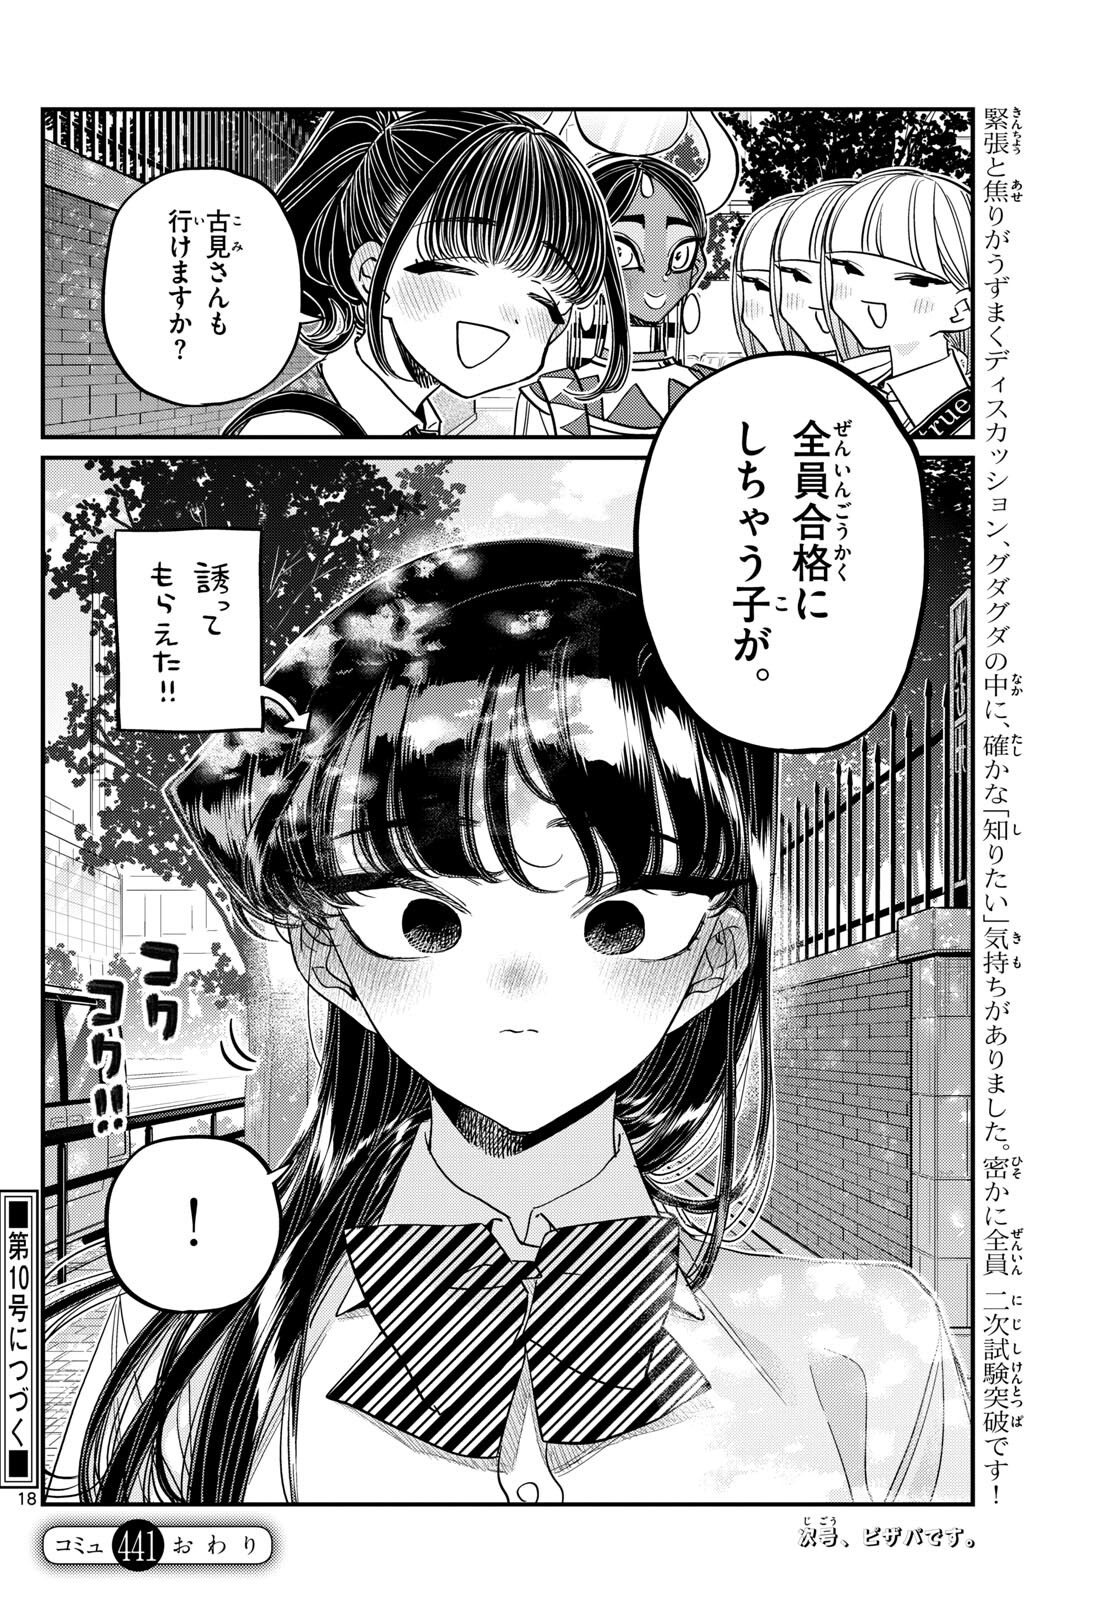 Komi-san wa Komyushou Desu - Chapter 441 - Page 18